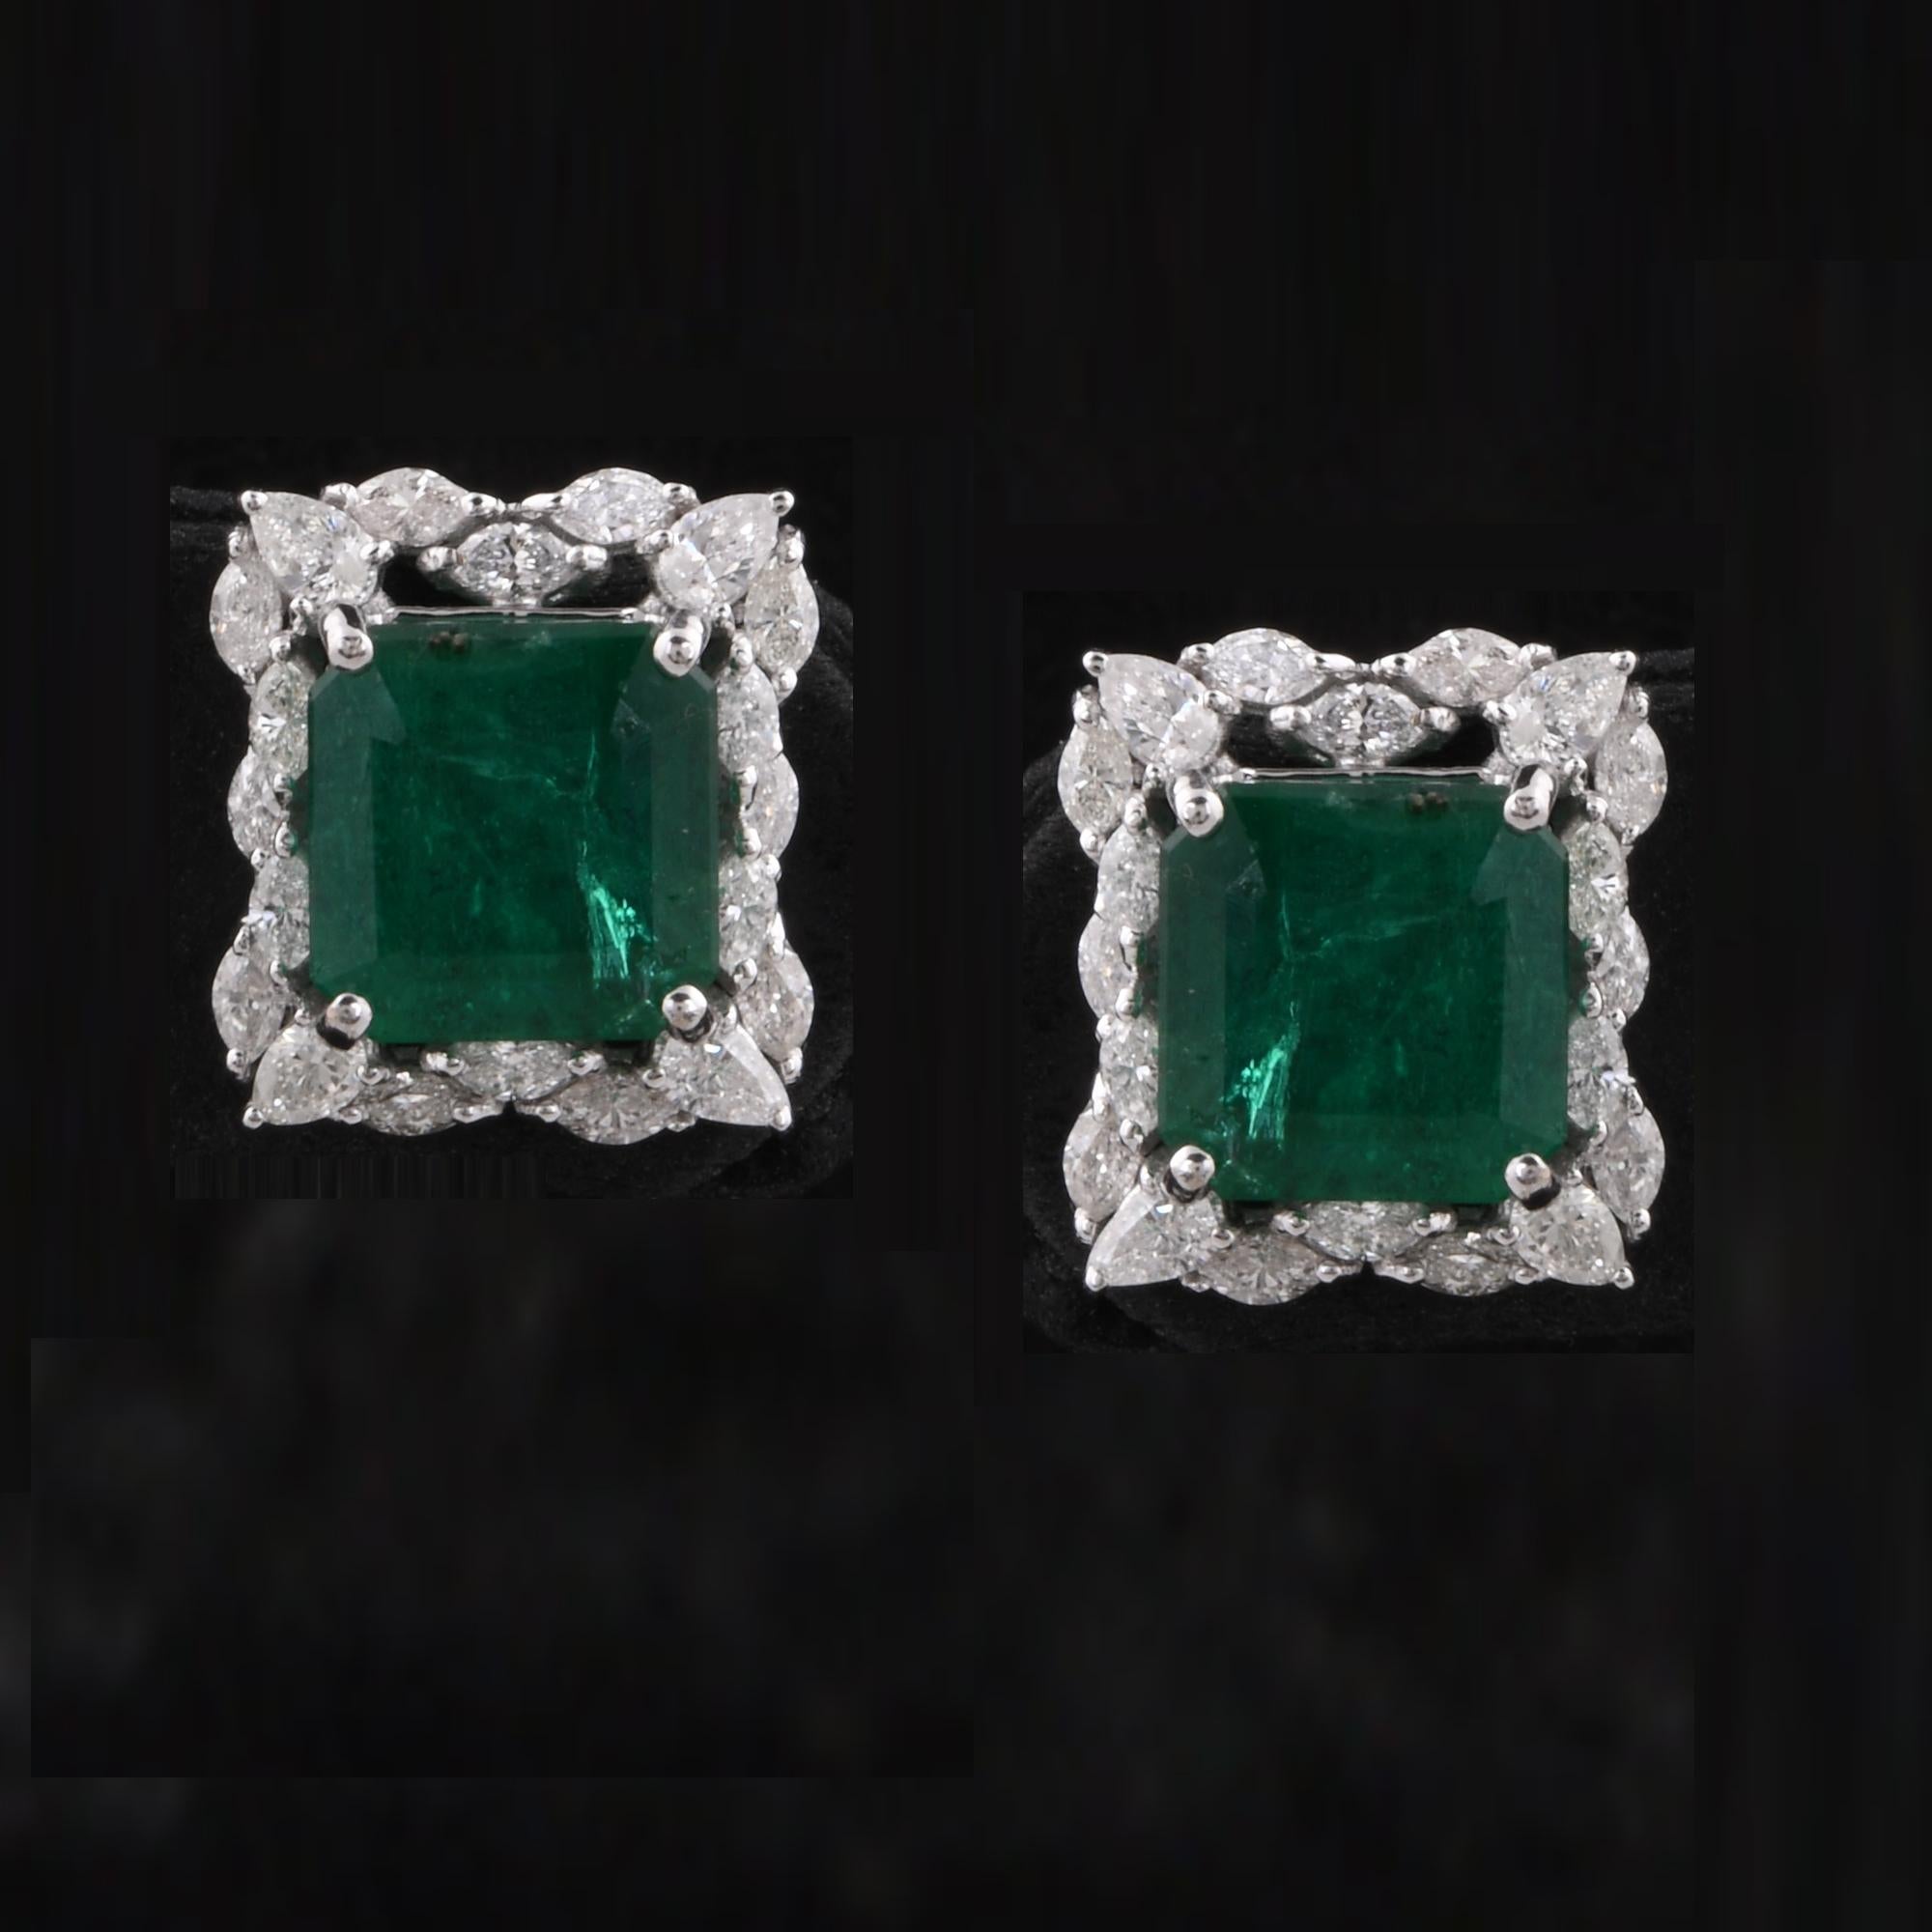 Emerald Cut Zambian Emerald Gemstone Stud Earrings Diamond 18 Karat White Gold Fine Jewelry For Sale